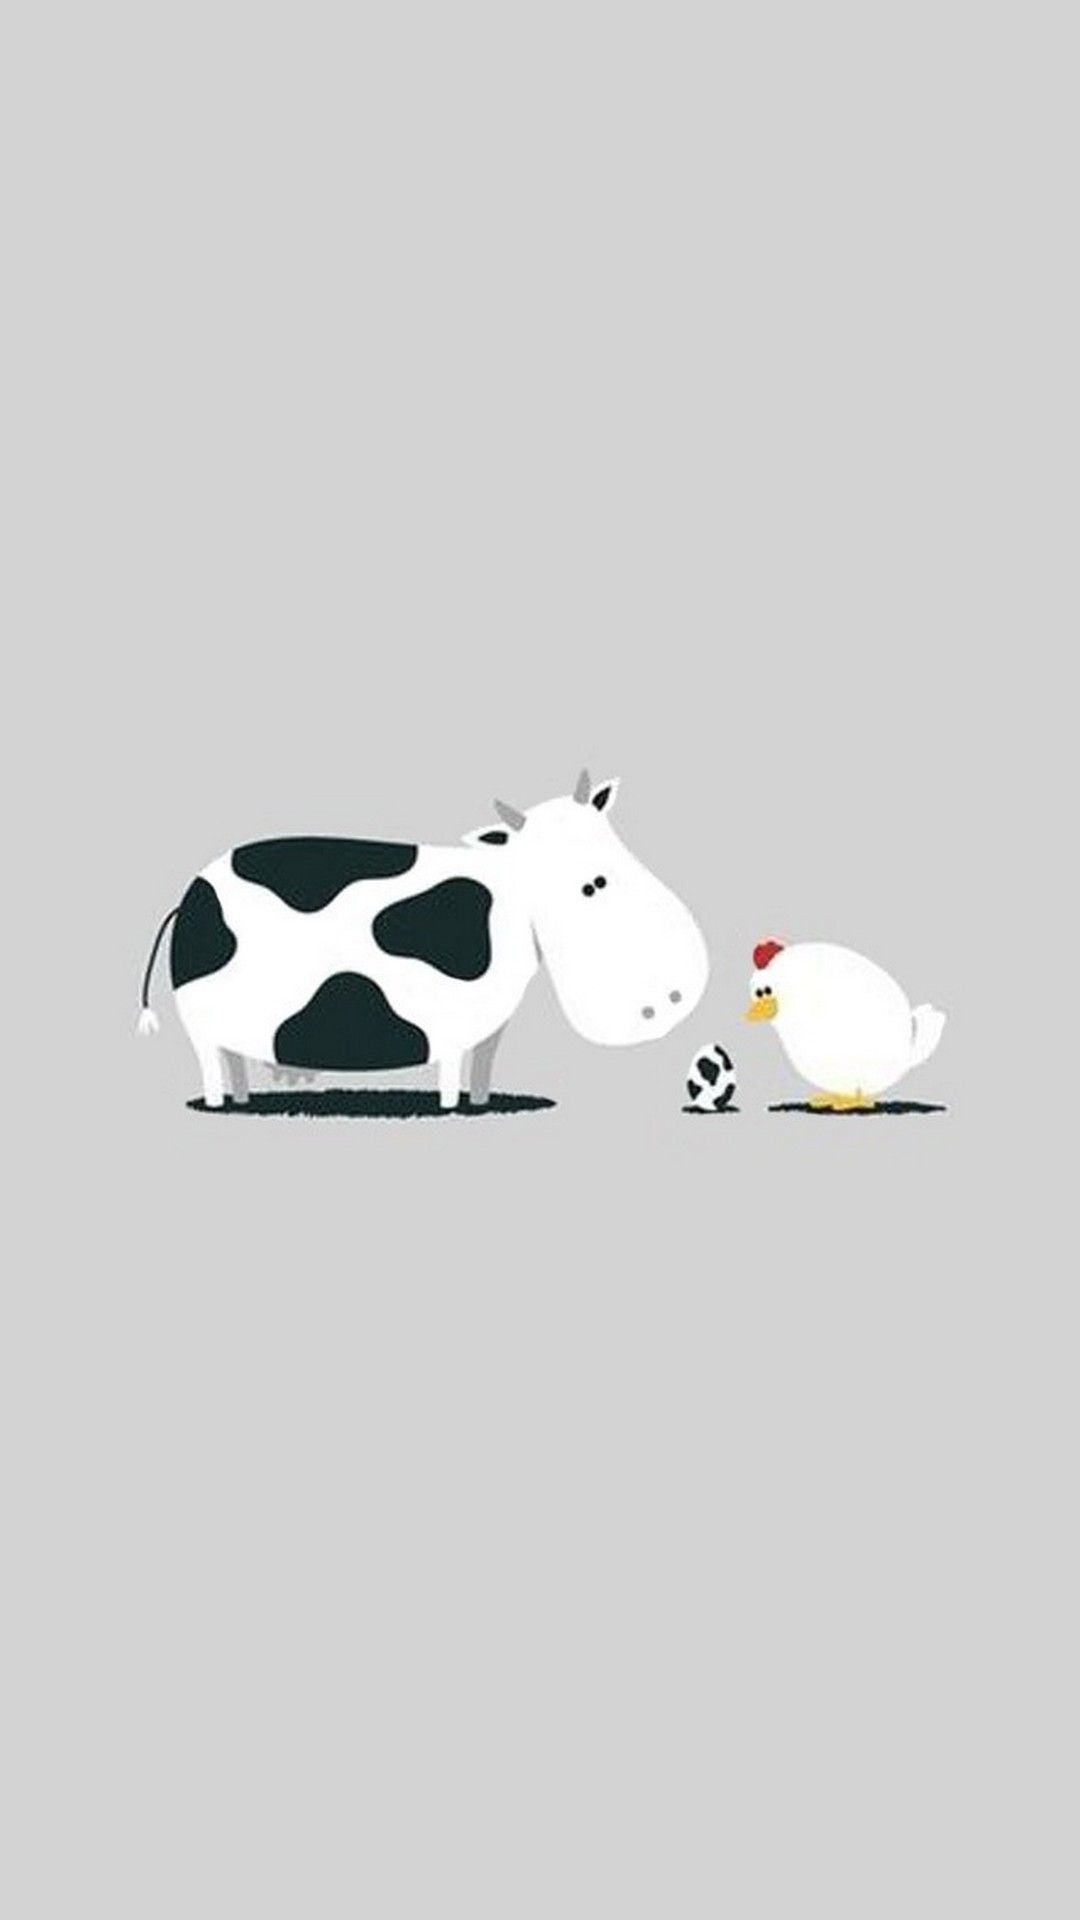 Những chú bò sữa trong các bộ phim hoạt hình là những nhân vật đáng yêu và vui nhộn, và hình ảnh của chúng là một lựa chọn hoàn hảo cho bức tường của bạn. Hãy xem những hình nền với chủ đề bò sữa hoạt hình để cảm thấy được sự tươi mới và vui nhộn.